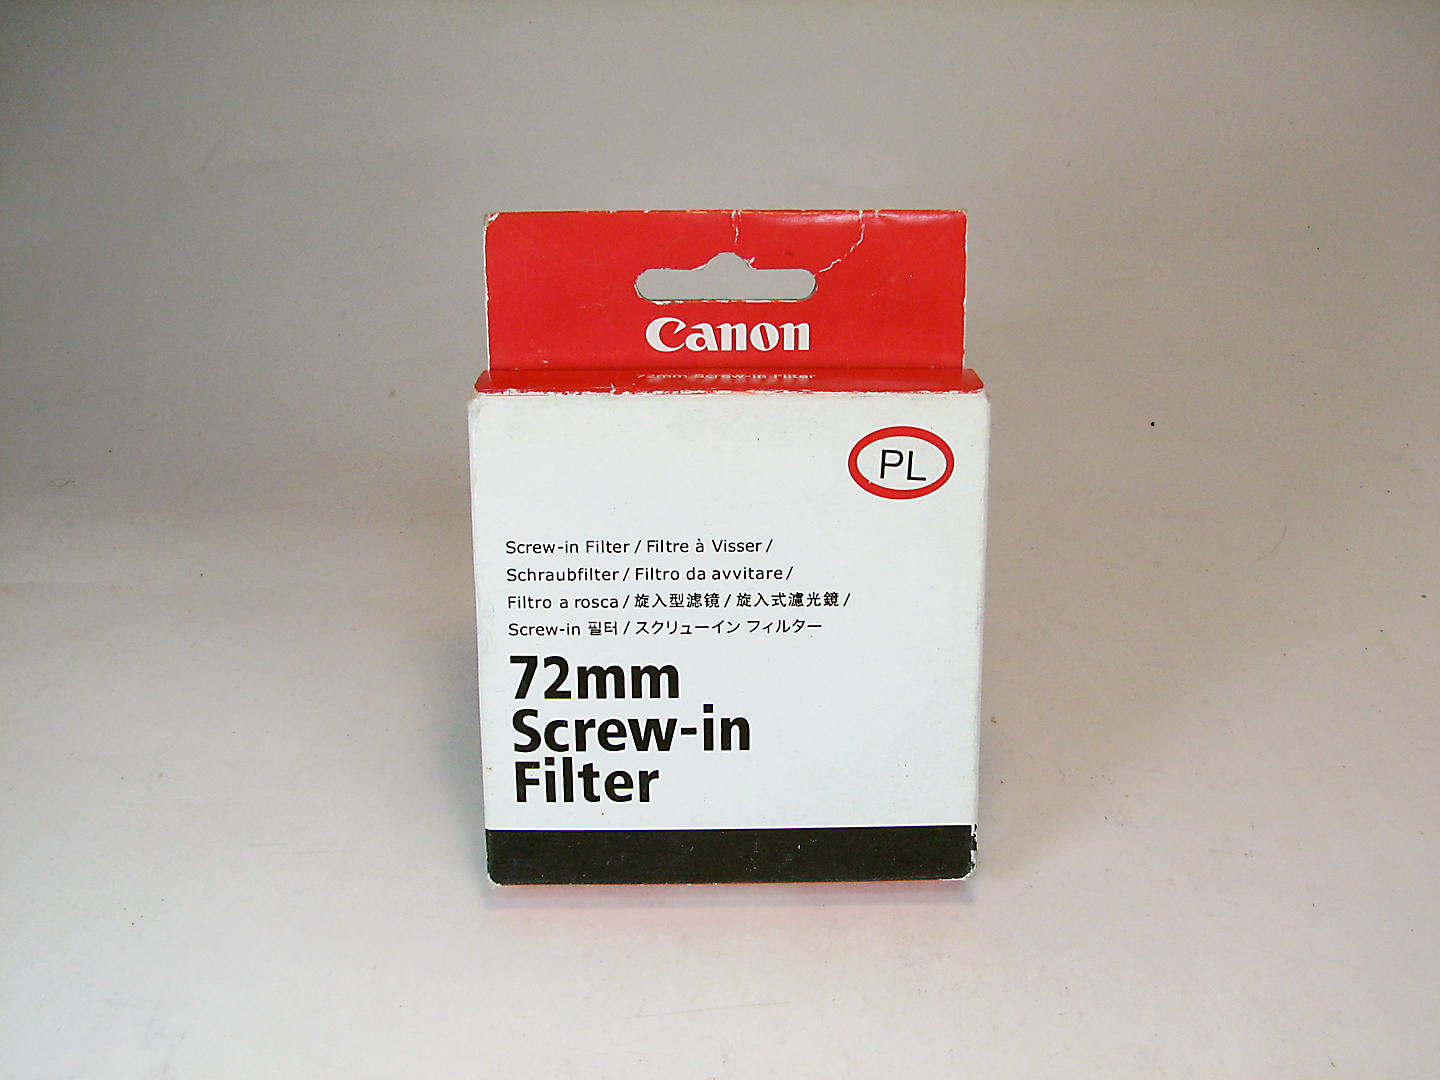 فیلتر آکبند Canon PL 72mm